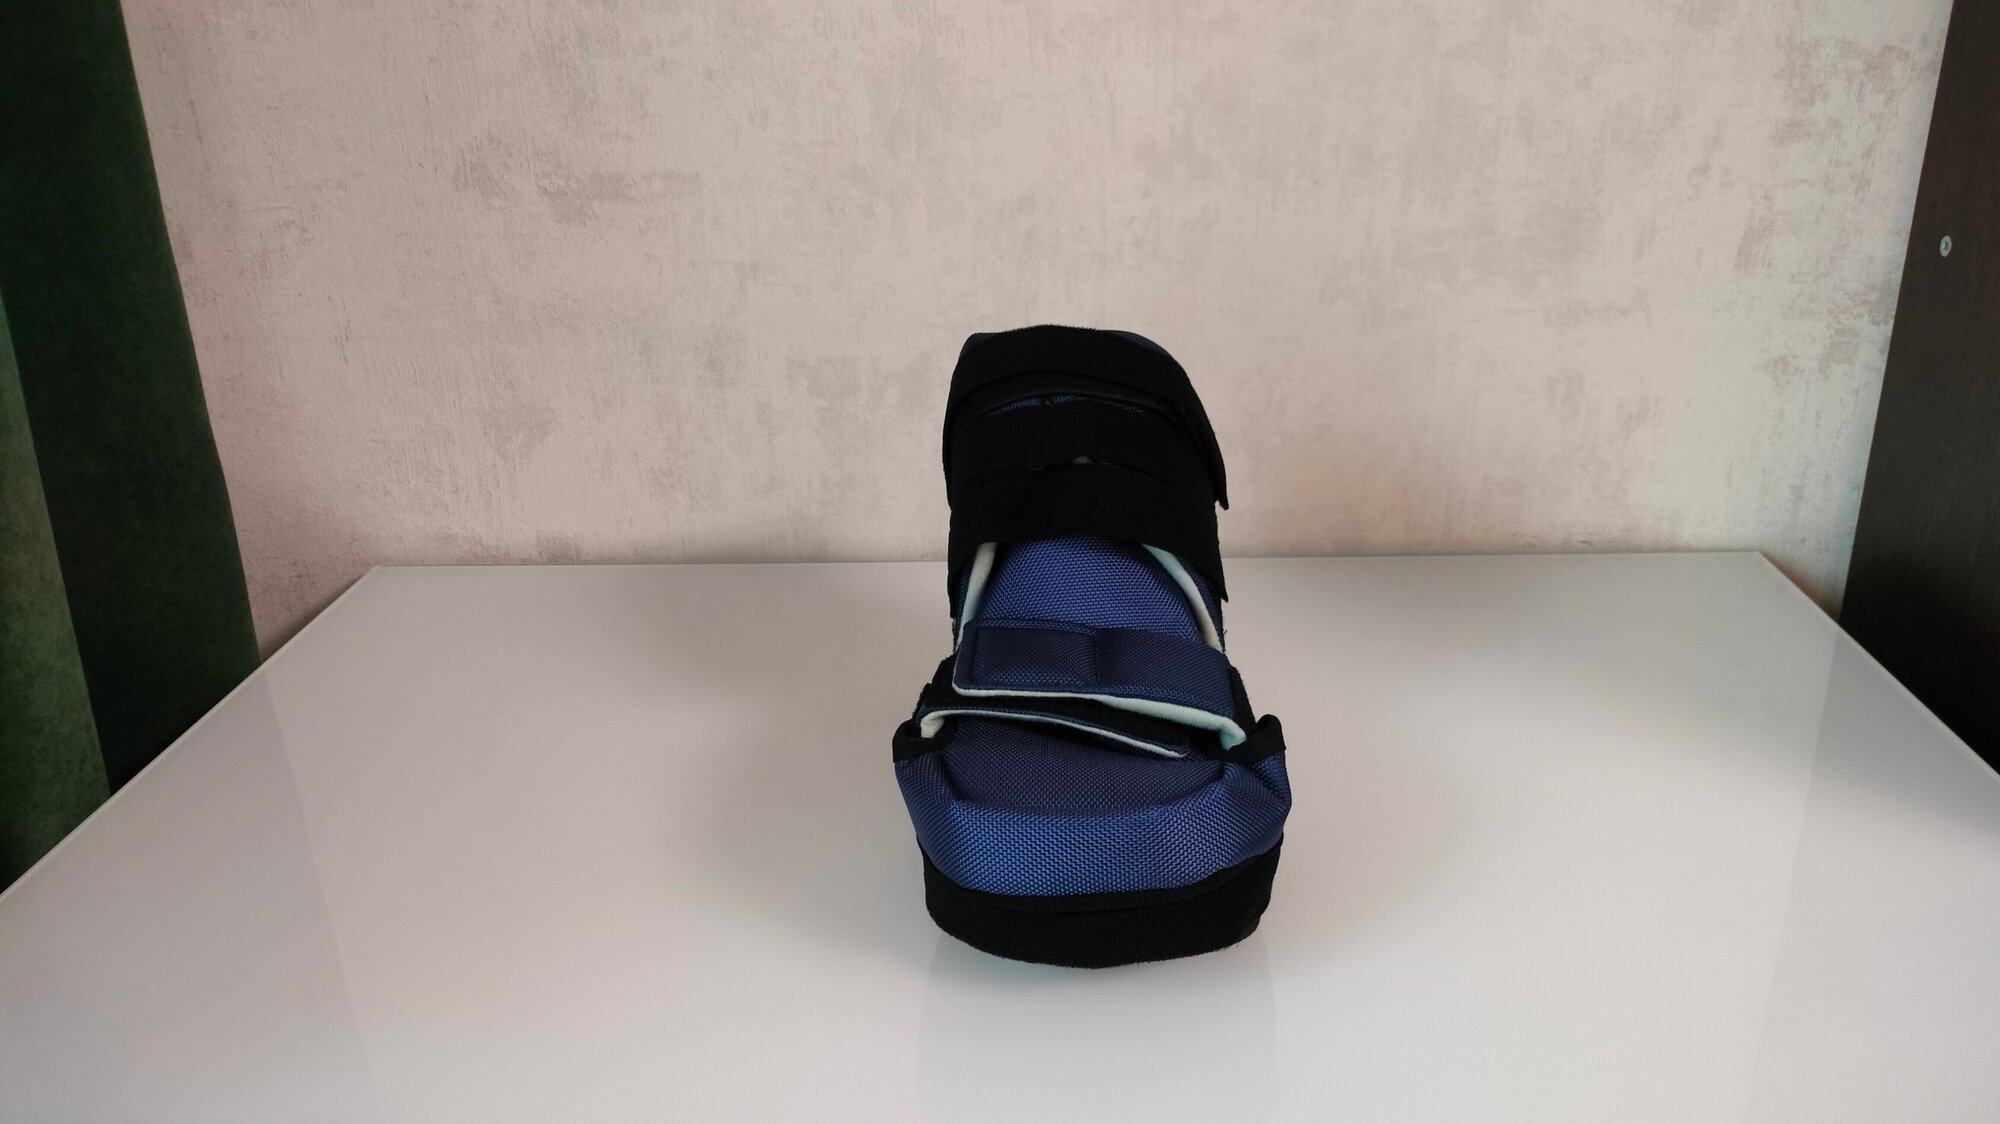 LM-406 LUOMMA барука, компенсаторный ботинок, обувь ортопедическая многоцелевая, послеоперационная, съемный чехол. Цена за 1 полупарок, р.35-37 - фотография № 11